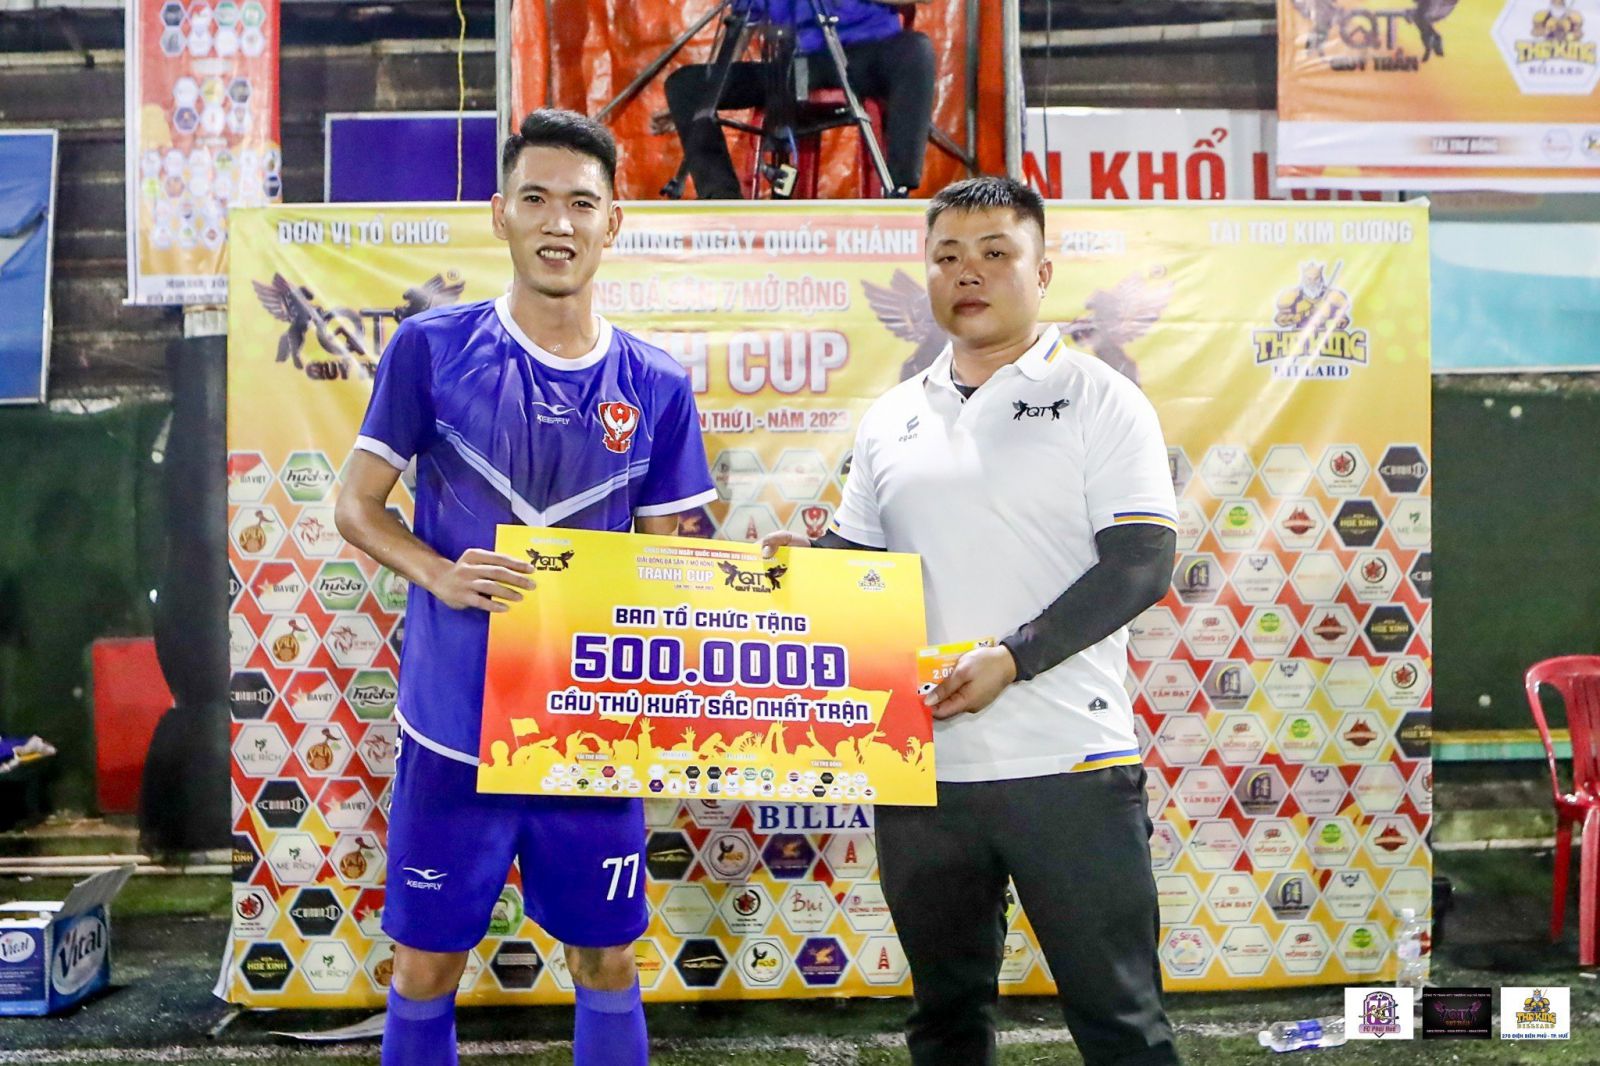 Ông Quý Trần, Trưởng Ban tổ chức Giải, trao danh hiệu Cầu thủ xuất sắc nhất trận đấu cho Tài "Dimaria" 